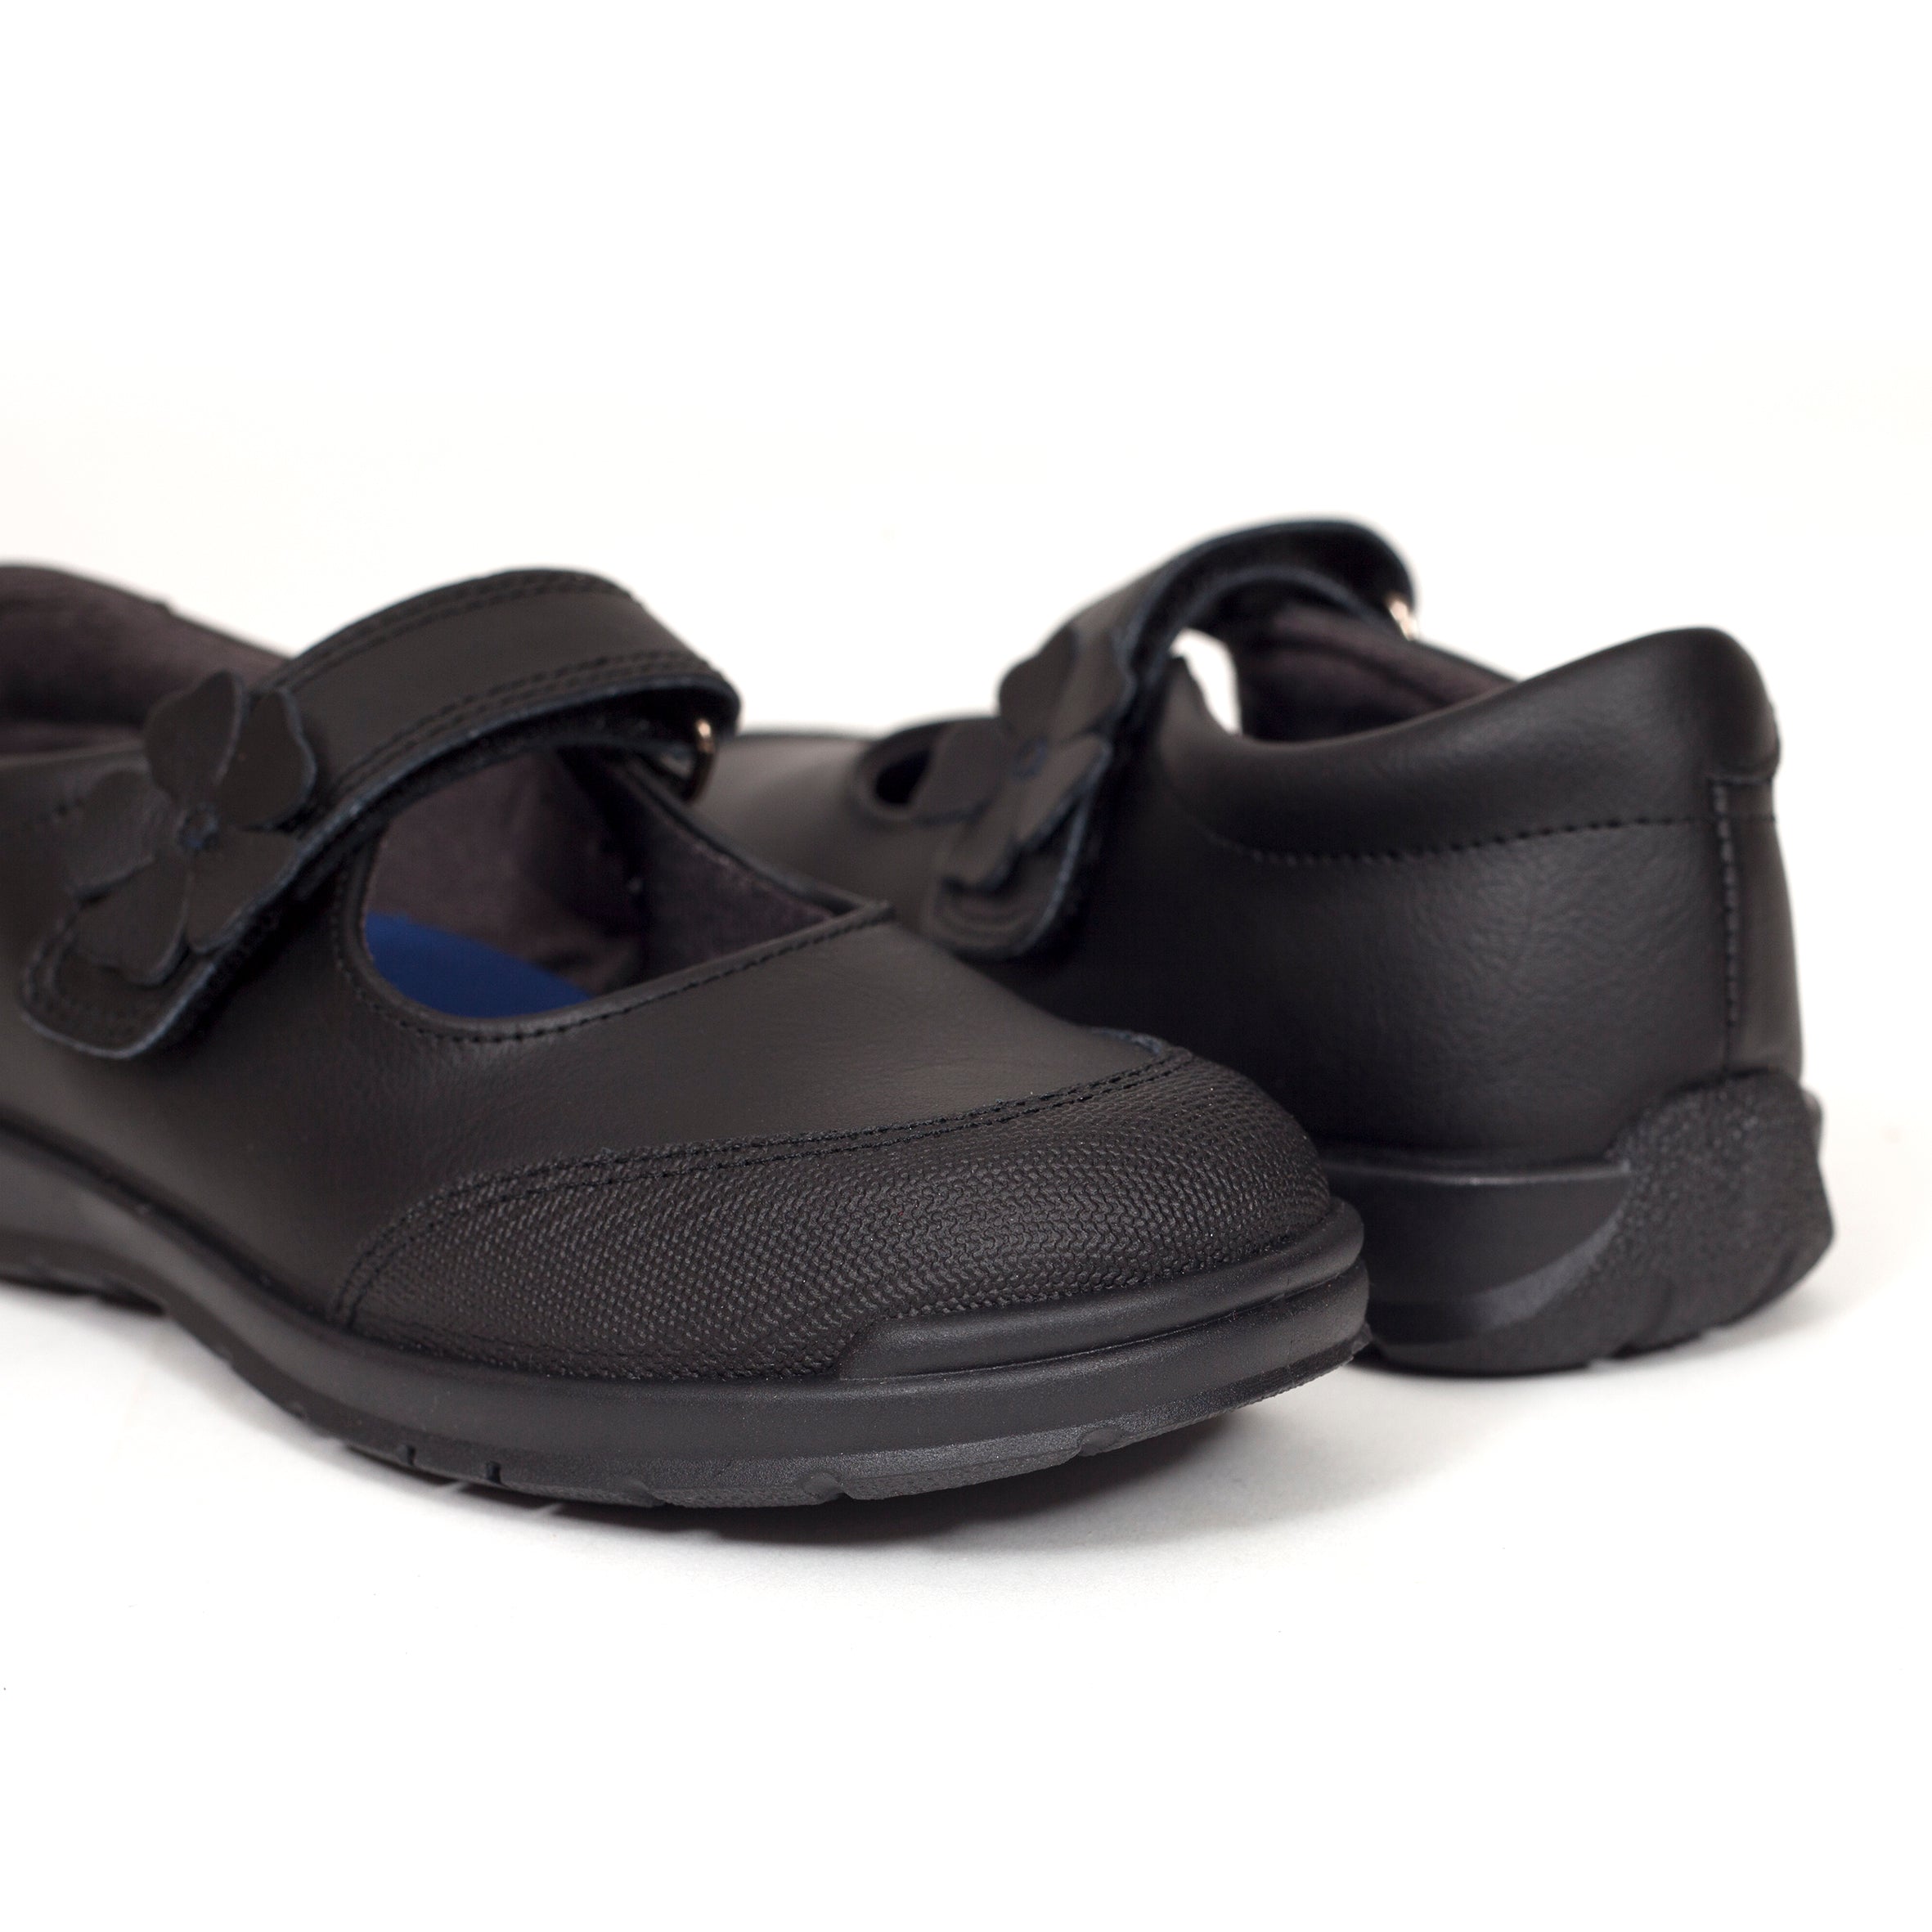 Zapatos para el colegio negro de niña merceditas made in Spain de marca miMaO